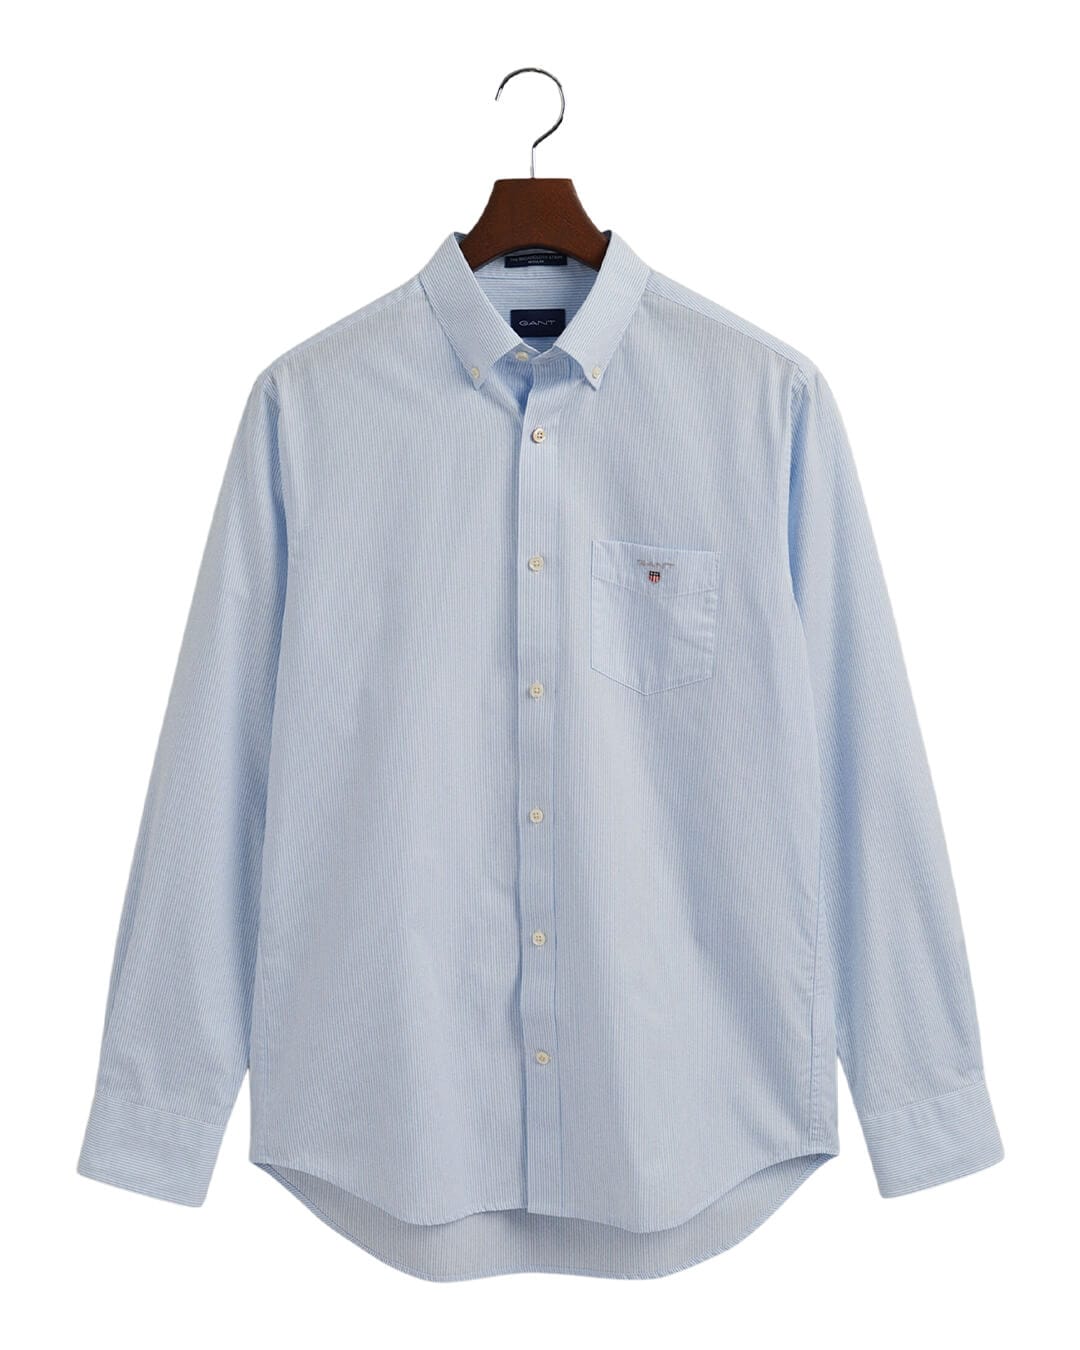 Gant Shirts Gant Regular Fit Banker Broadcloth Blue Shirt